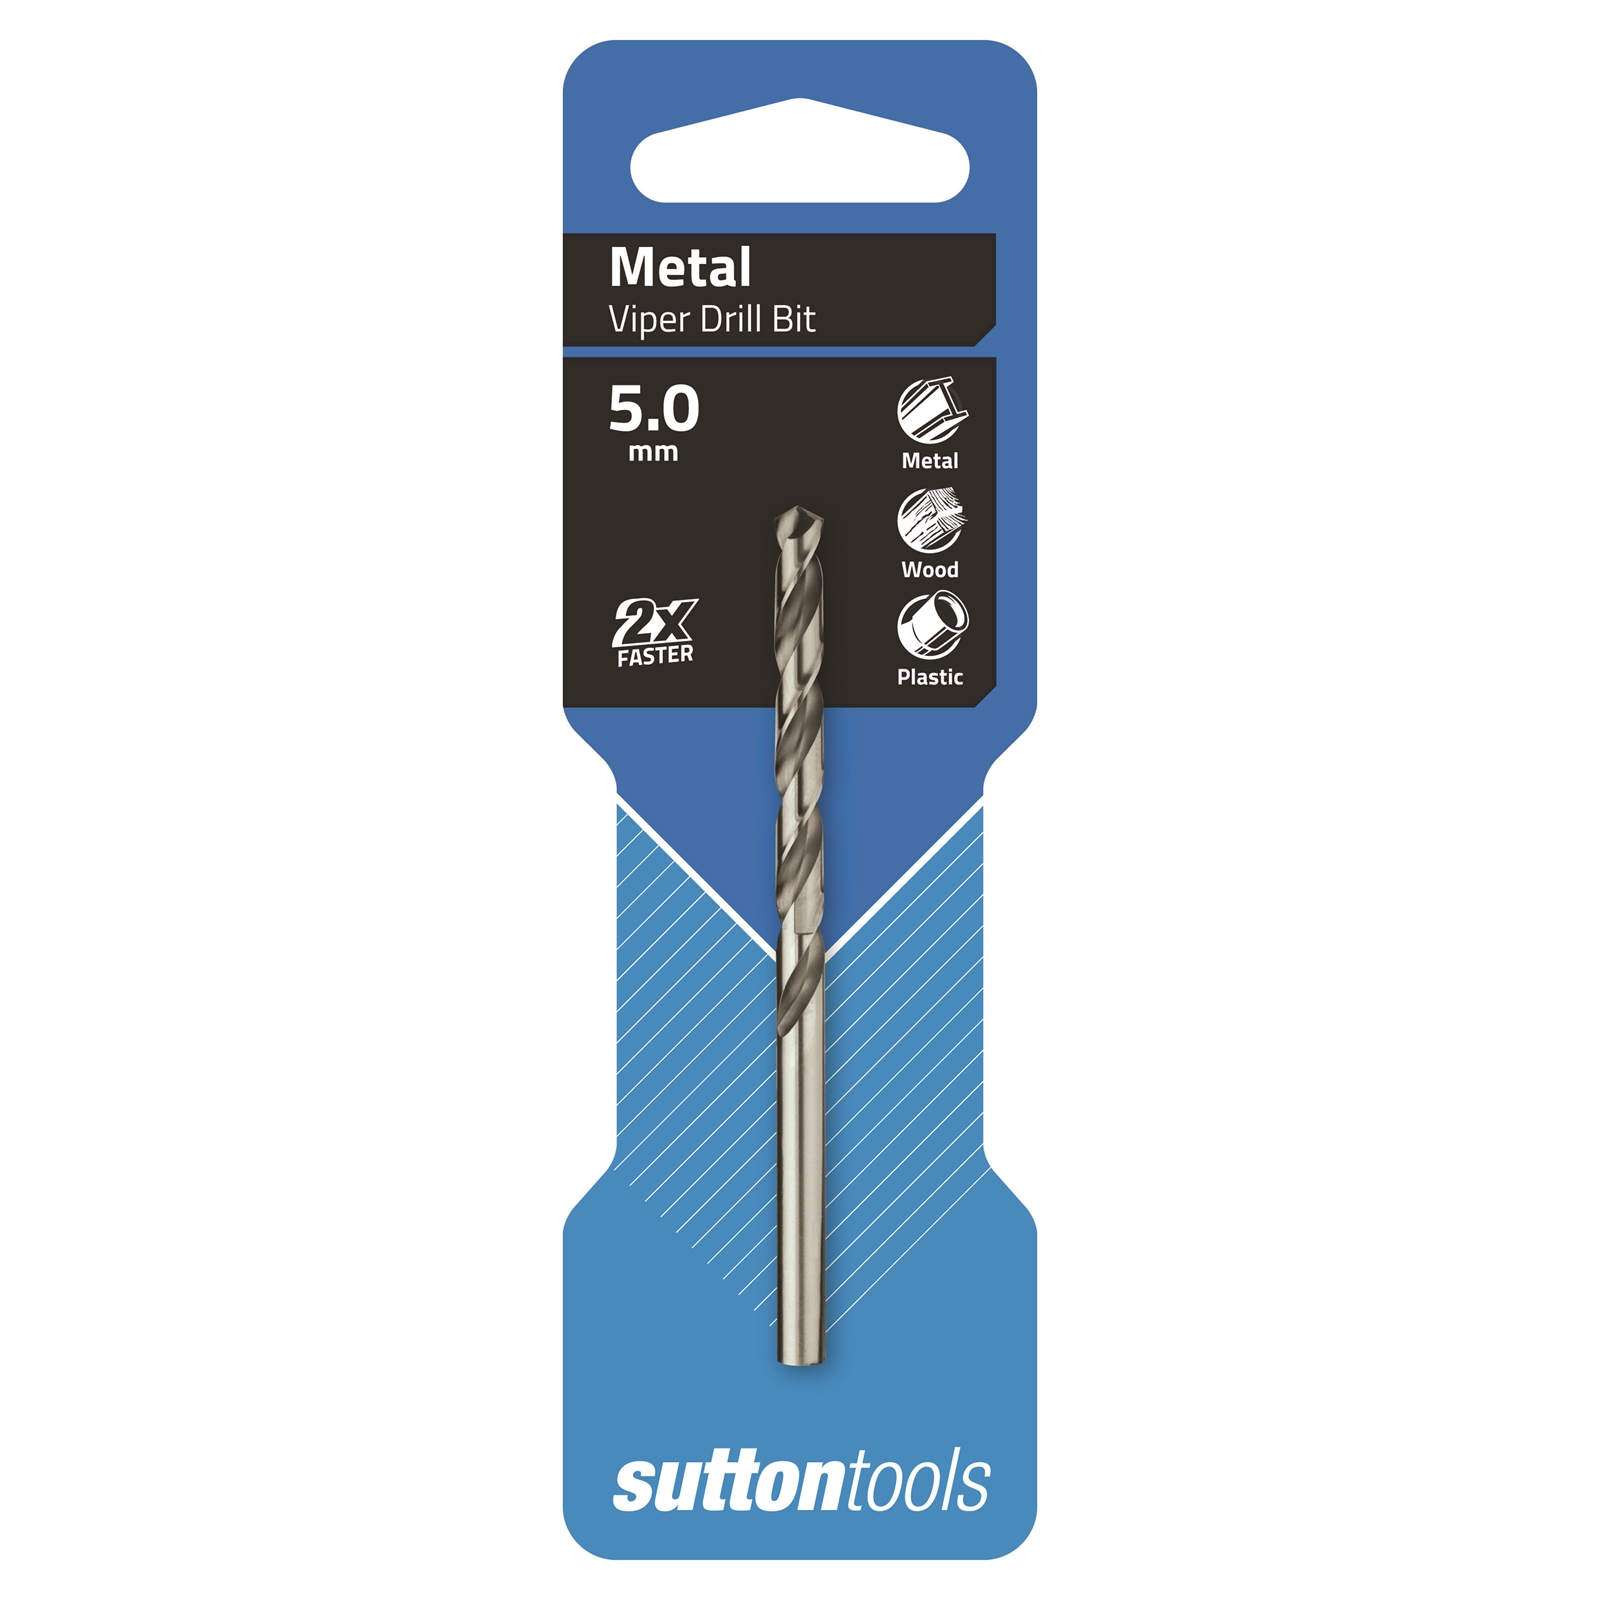 Sutton Tools 5mm HSS Metric Viper Drill Bit